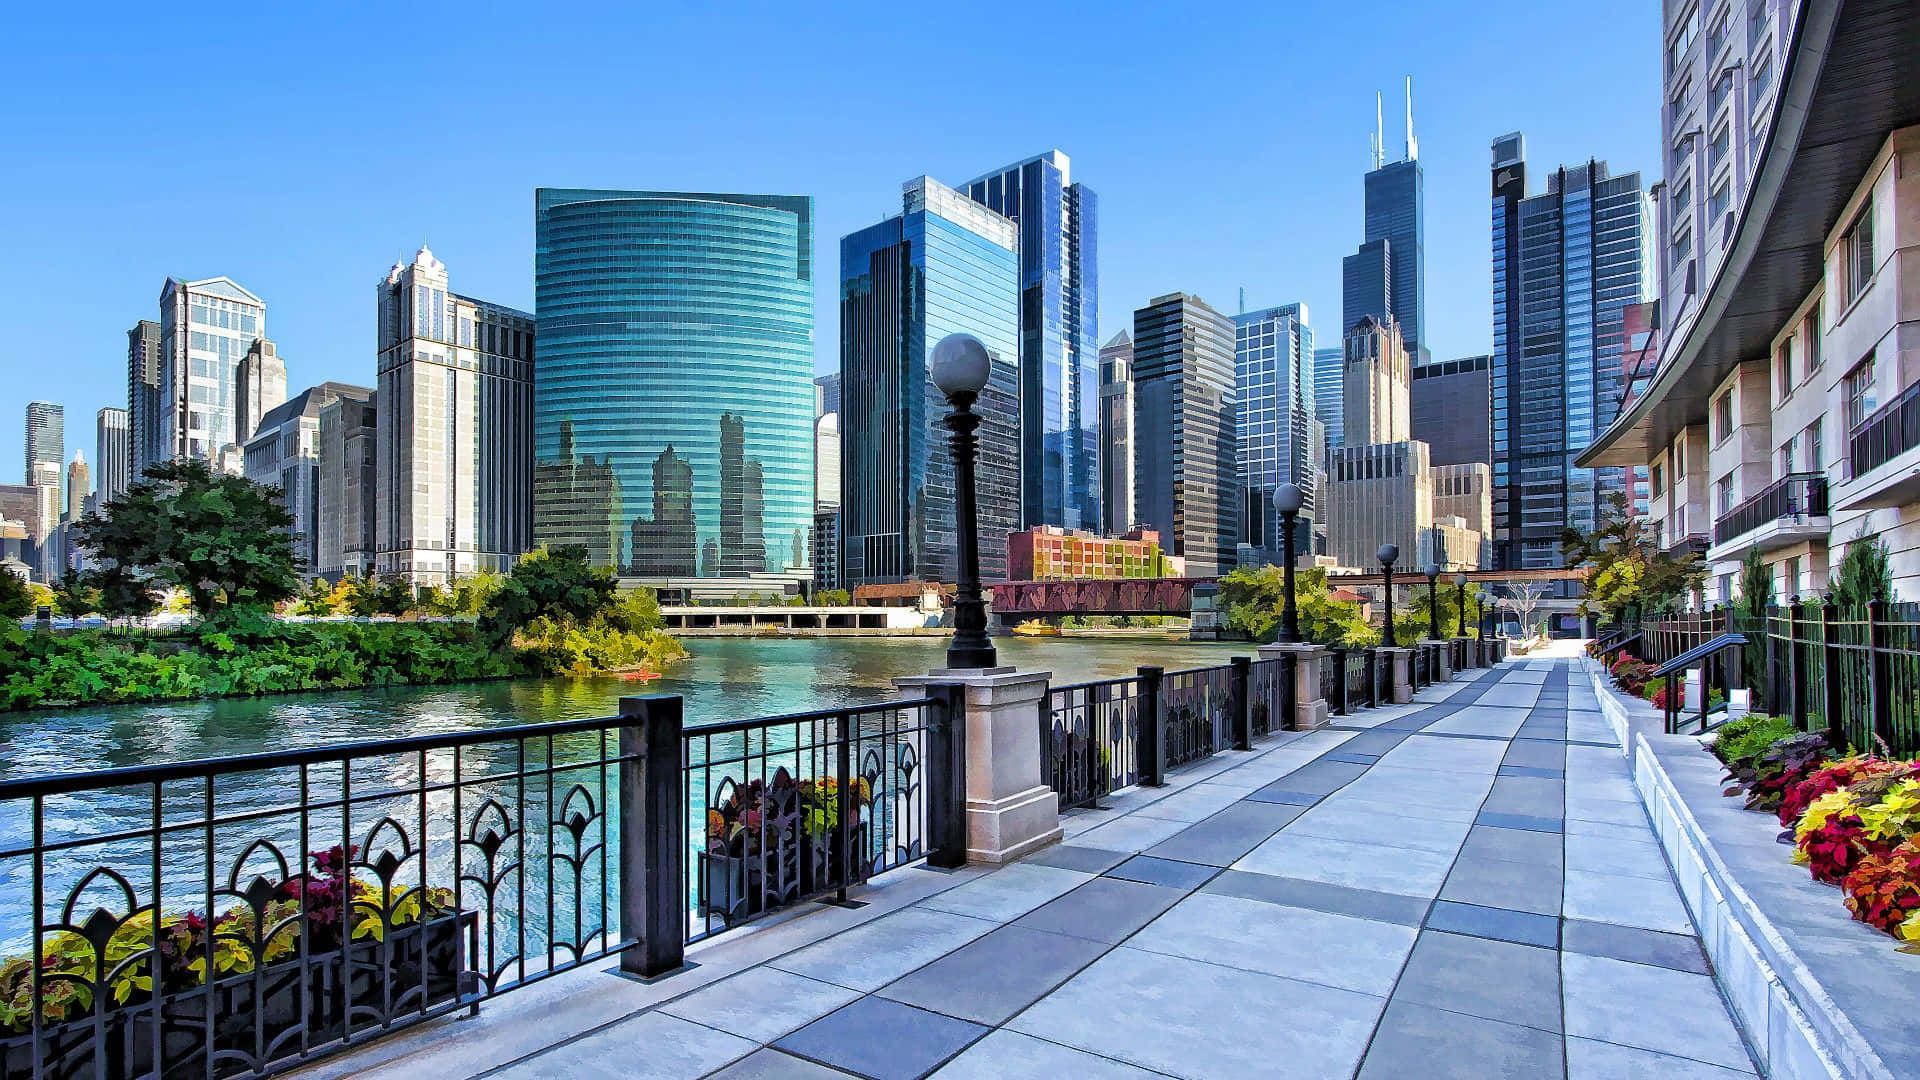 Genießensie Atemberaubende Ausblicke Auf Die Ikonische Skyline Von Chicago.